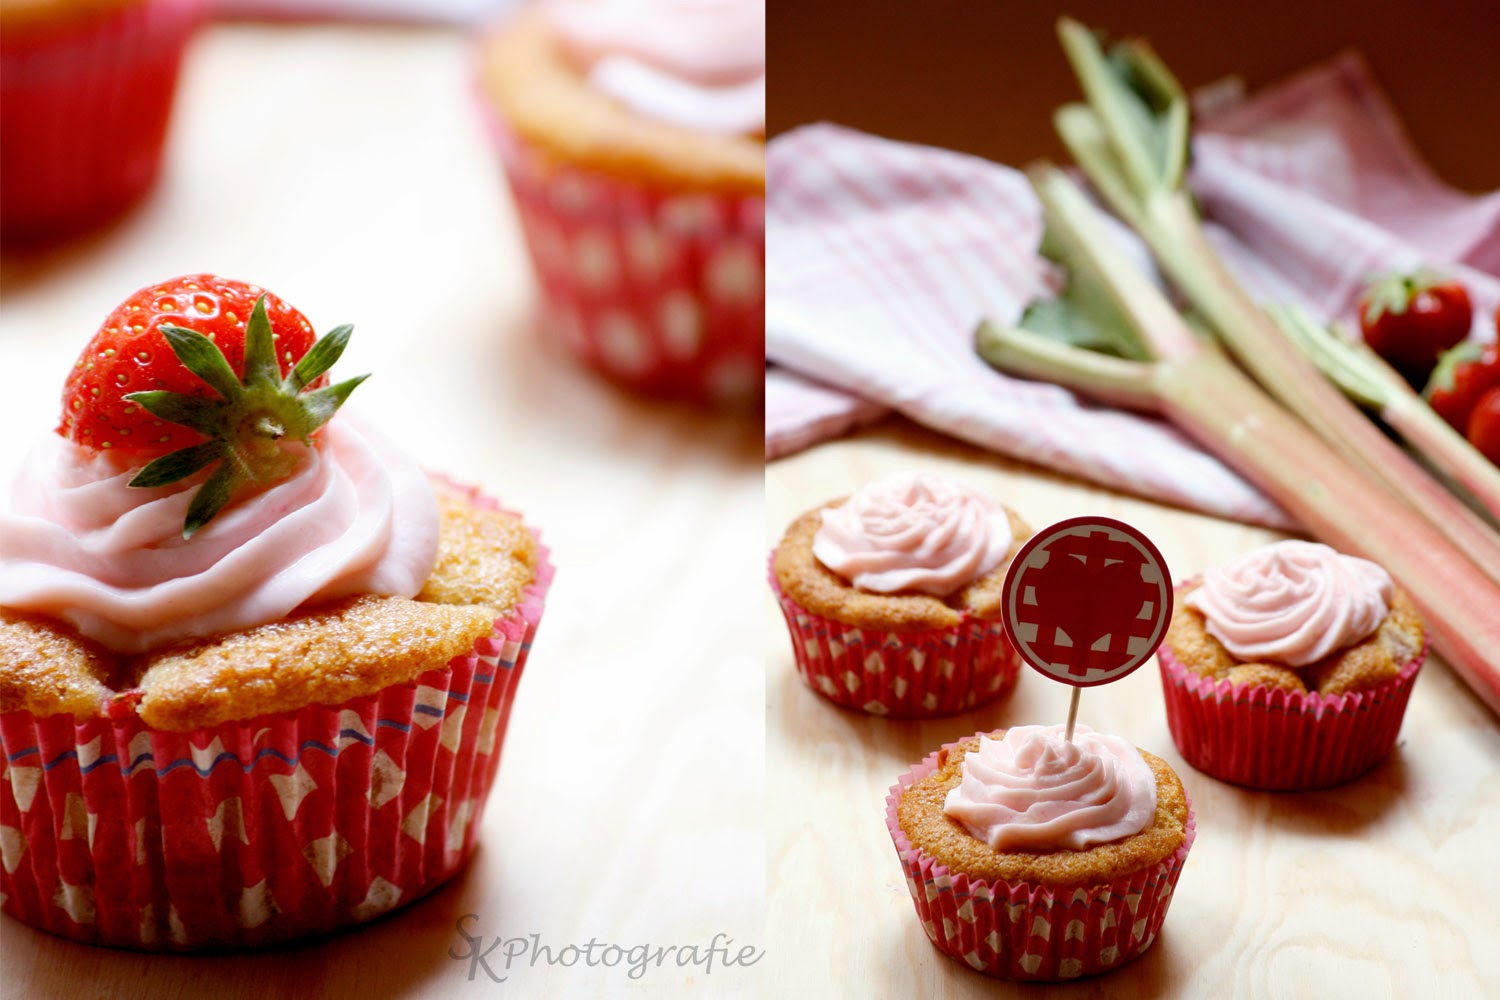 Erdbeer-Rhabarber-Cupcakes mit Rhabarber-Topping | Alles und Anderes